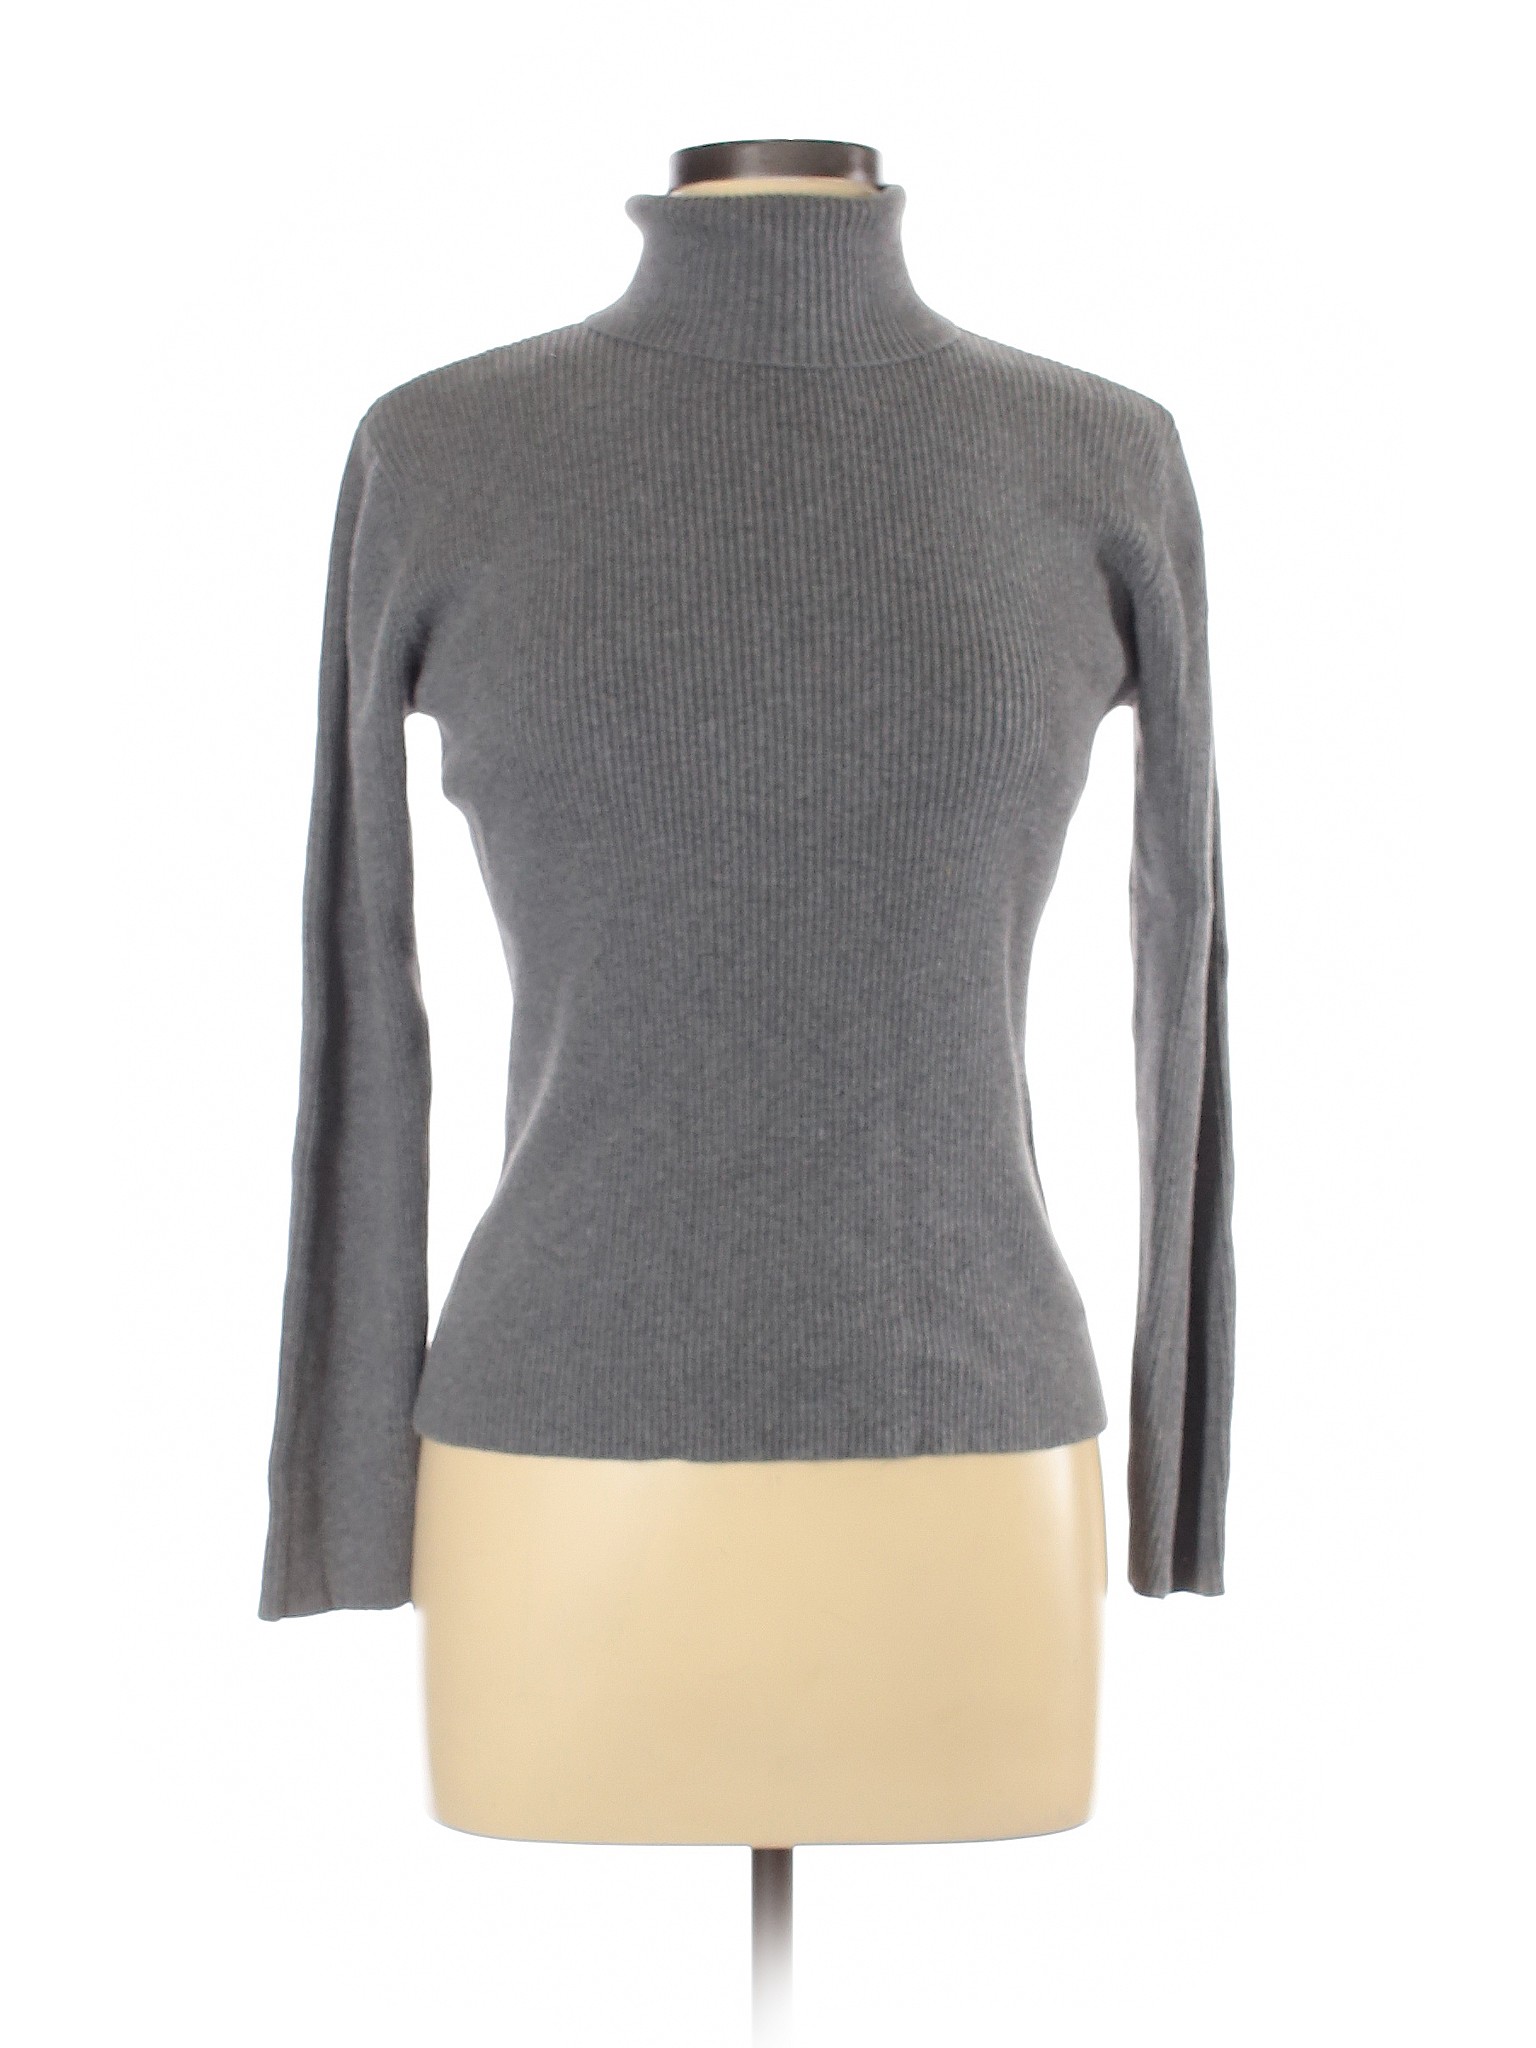 Style&Co Women Gray Long Sleeve Turtleneck L | eBay